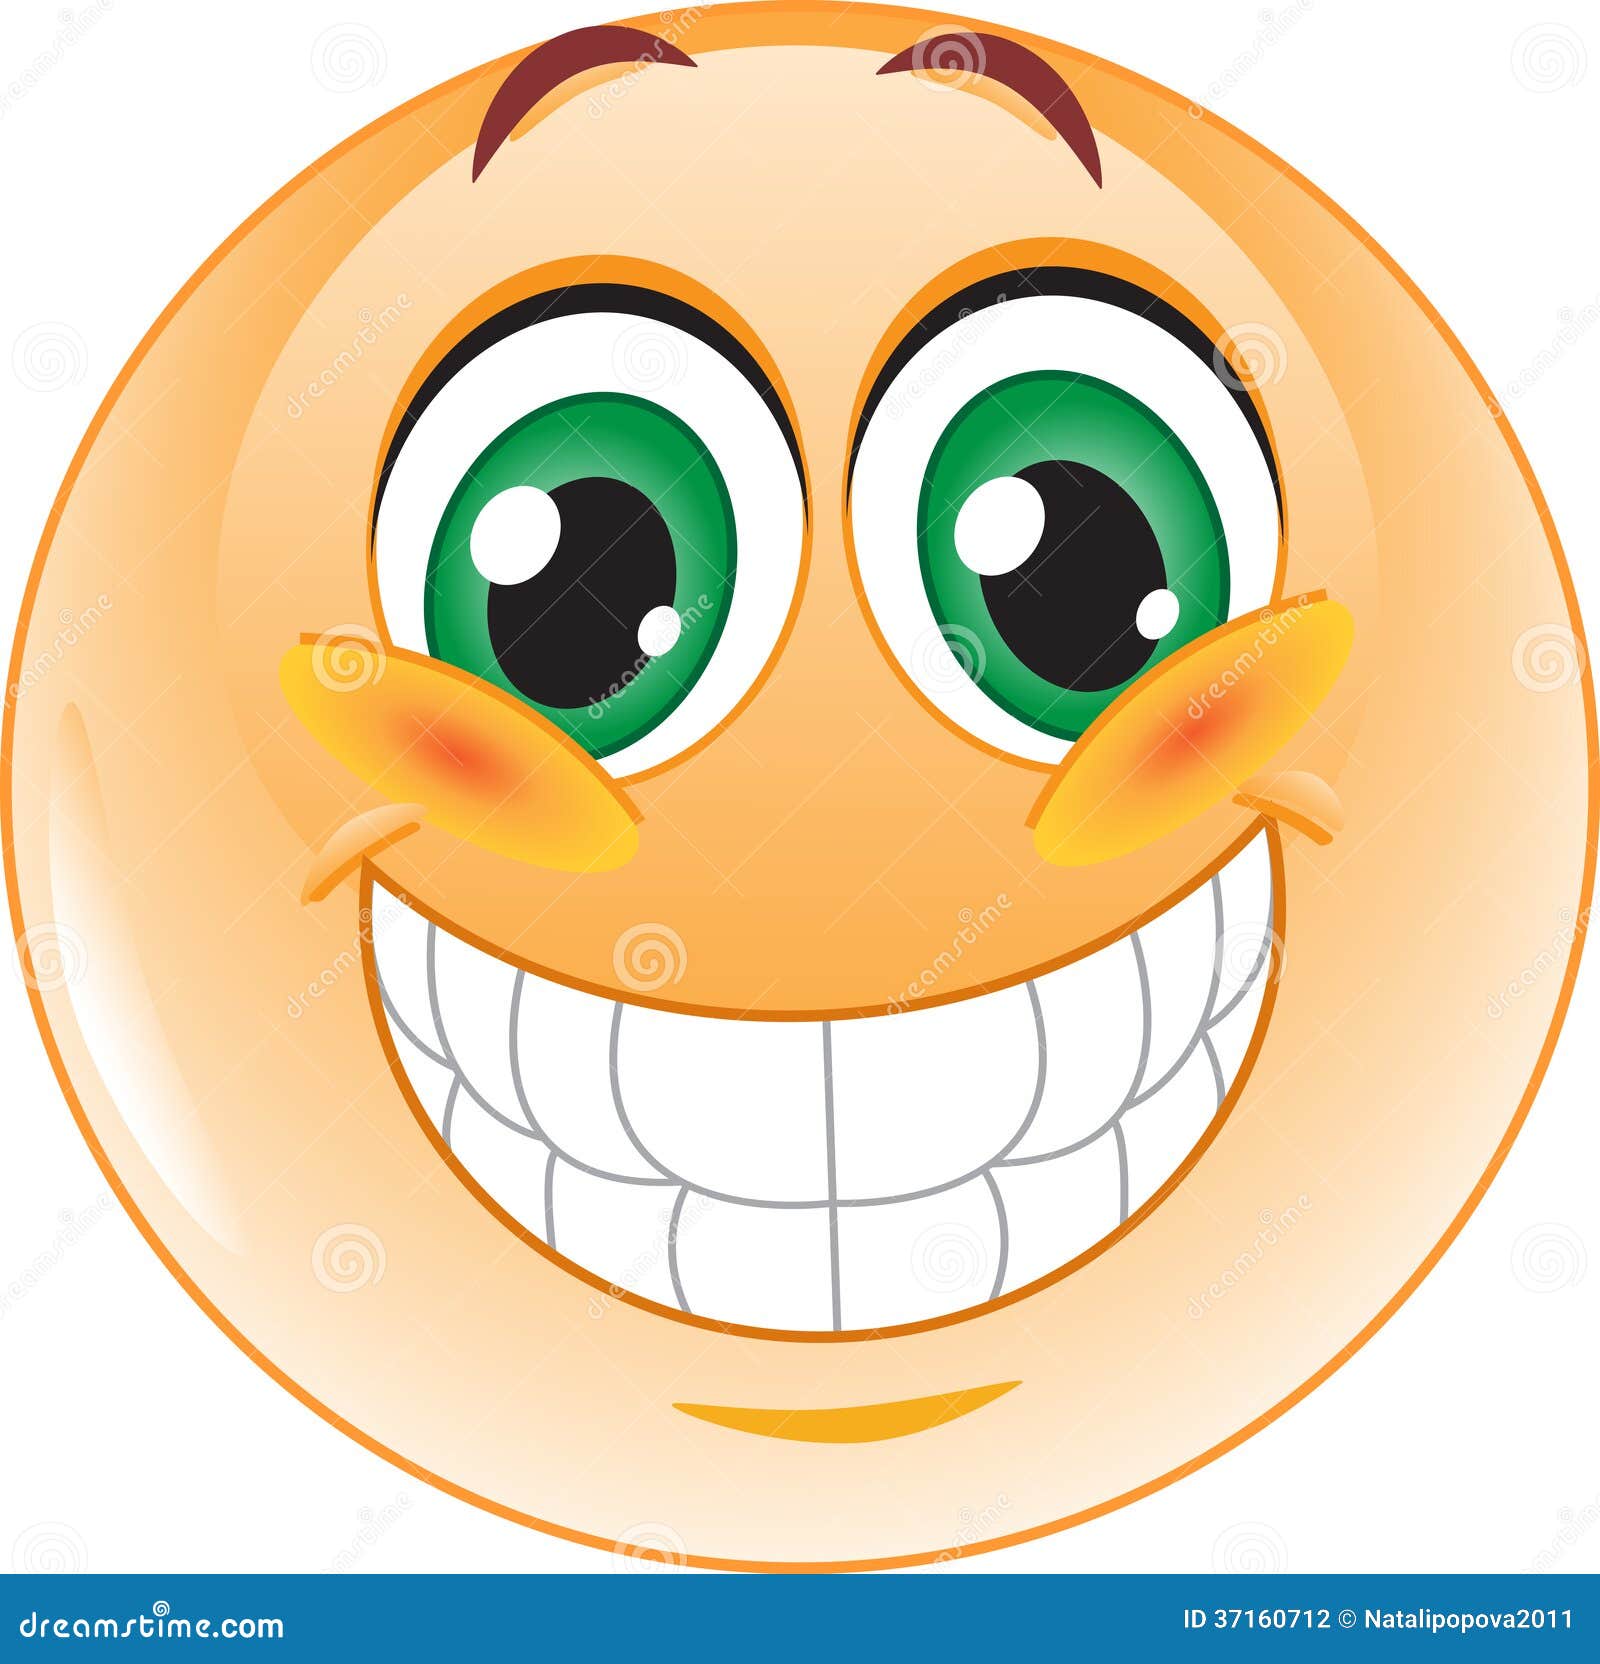 Evaluatie Eerlijk Oppervlakte Big smile emoticon stock vector. Illustration of funny - 37160712